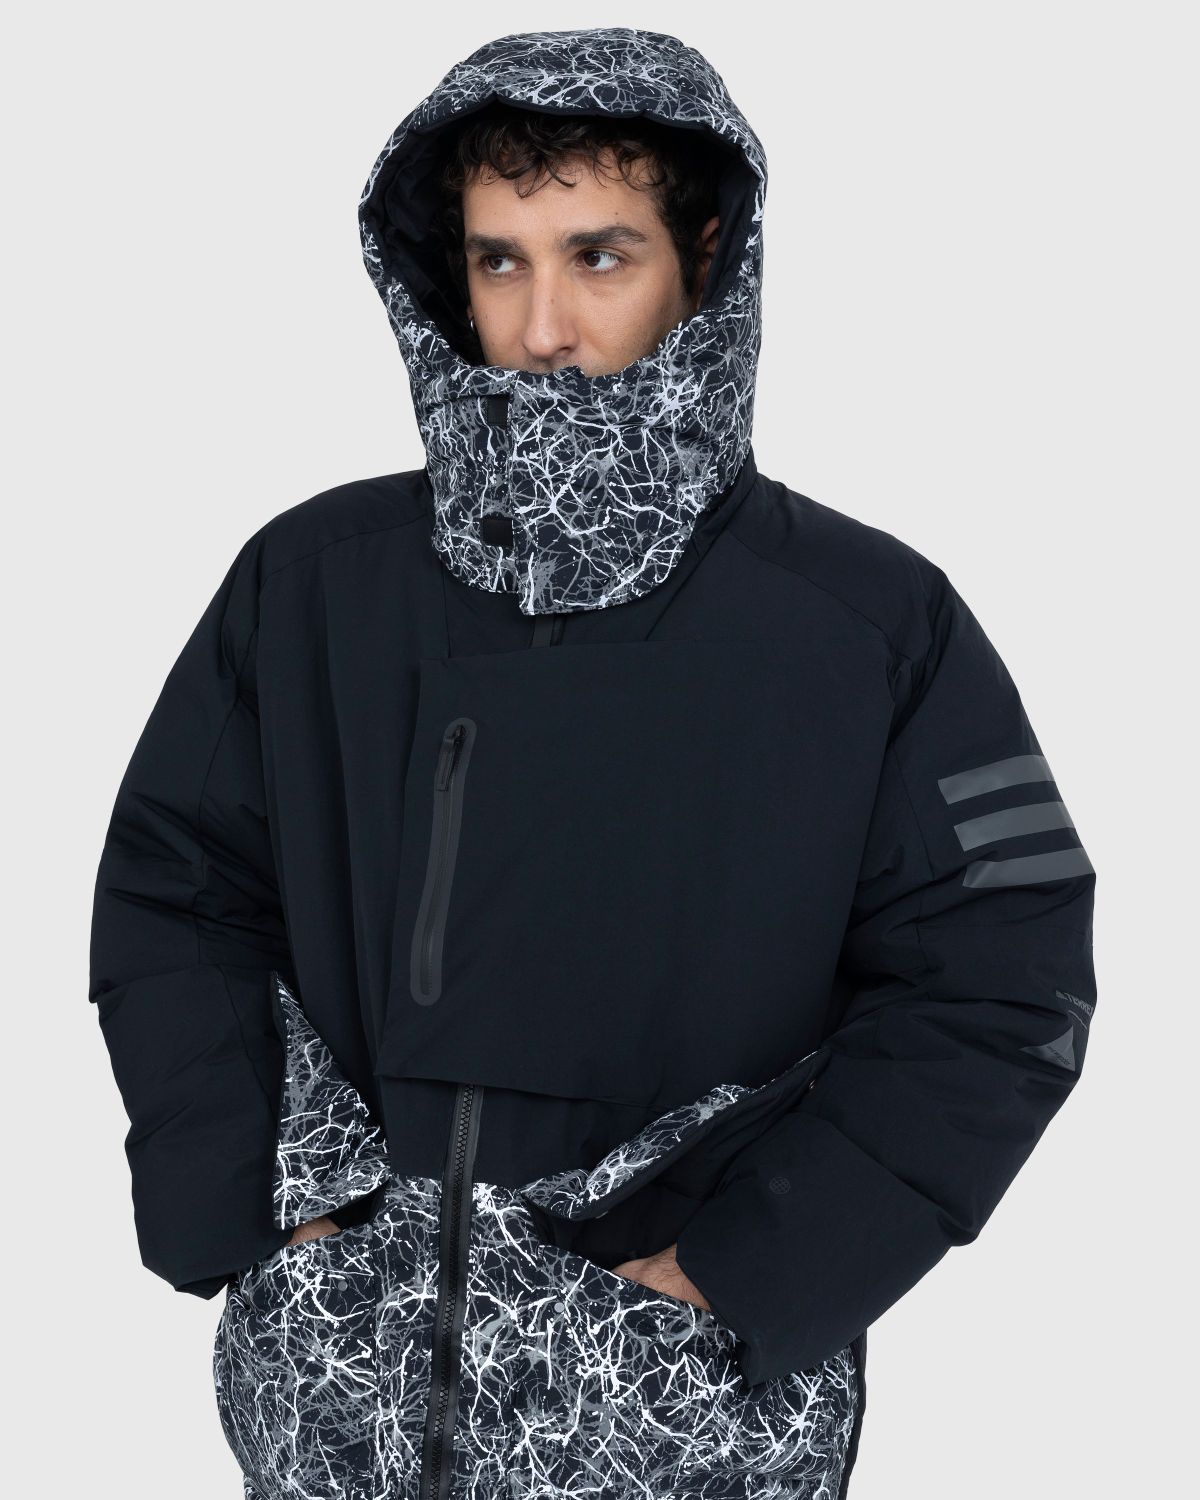 Adidas x And Wander – TERREX Xploric Jacket Black | Highsnobiety Shop